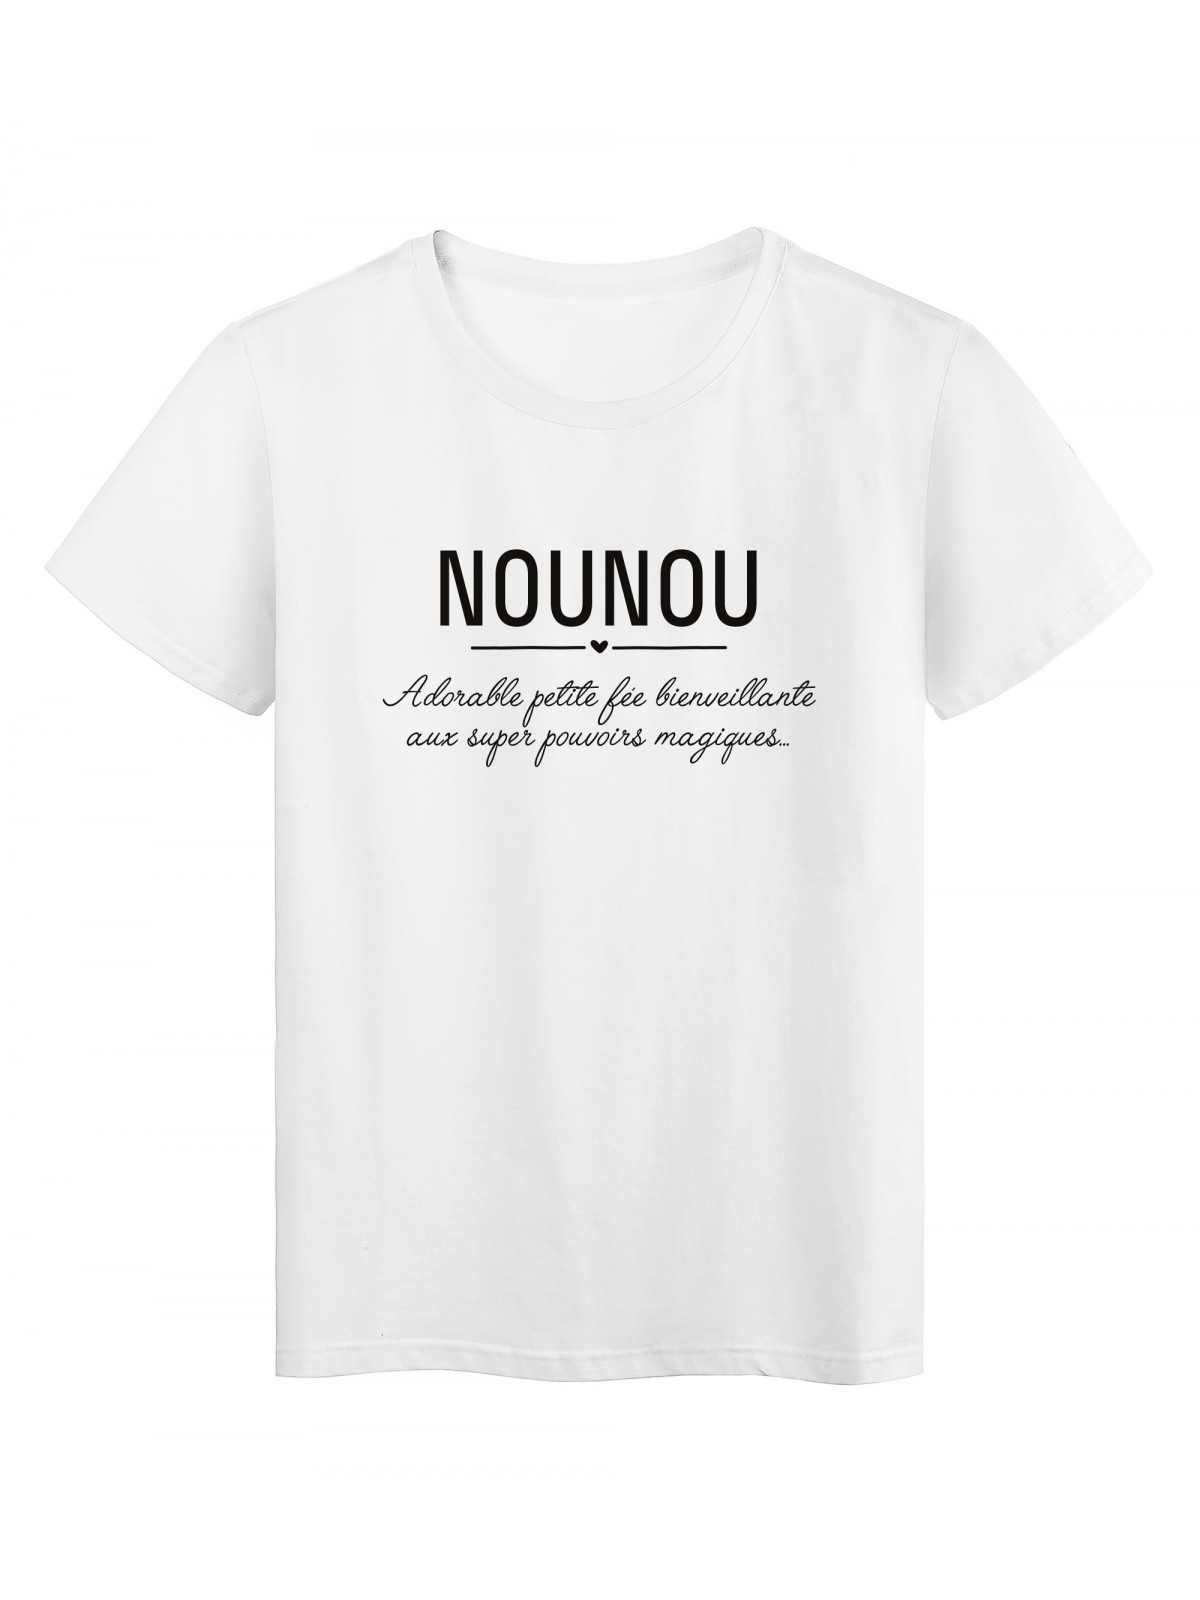 T-Shirt imprimÃ© citation Nounou adorable petite fÃ©e 